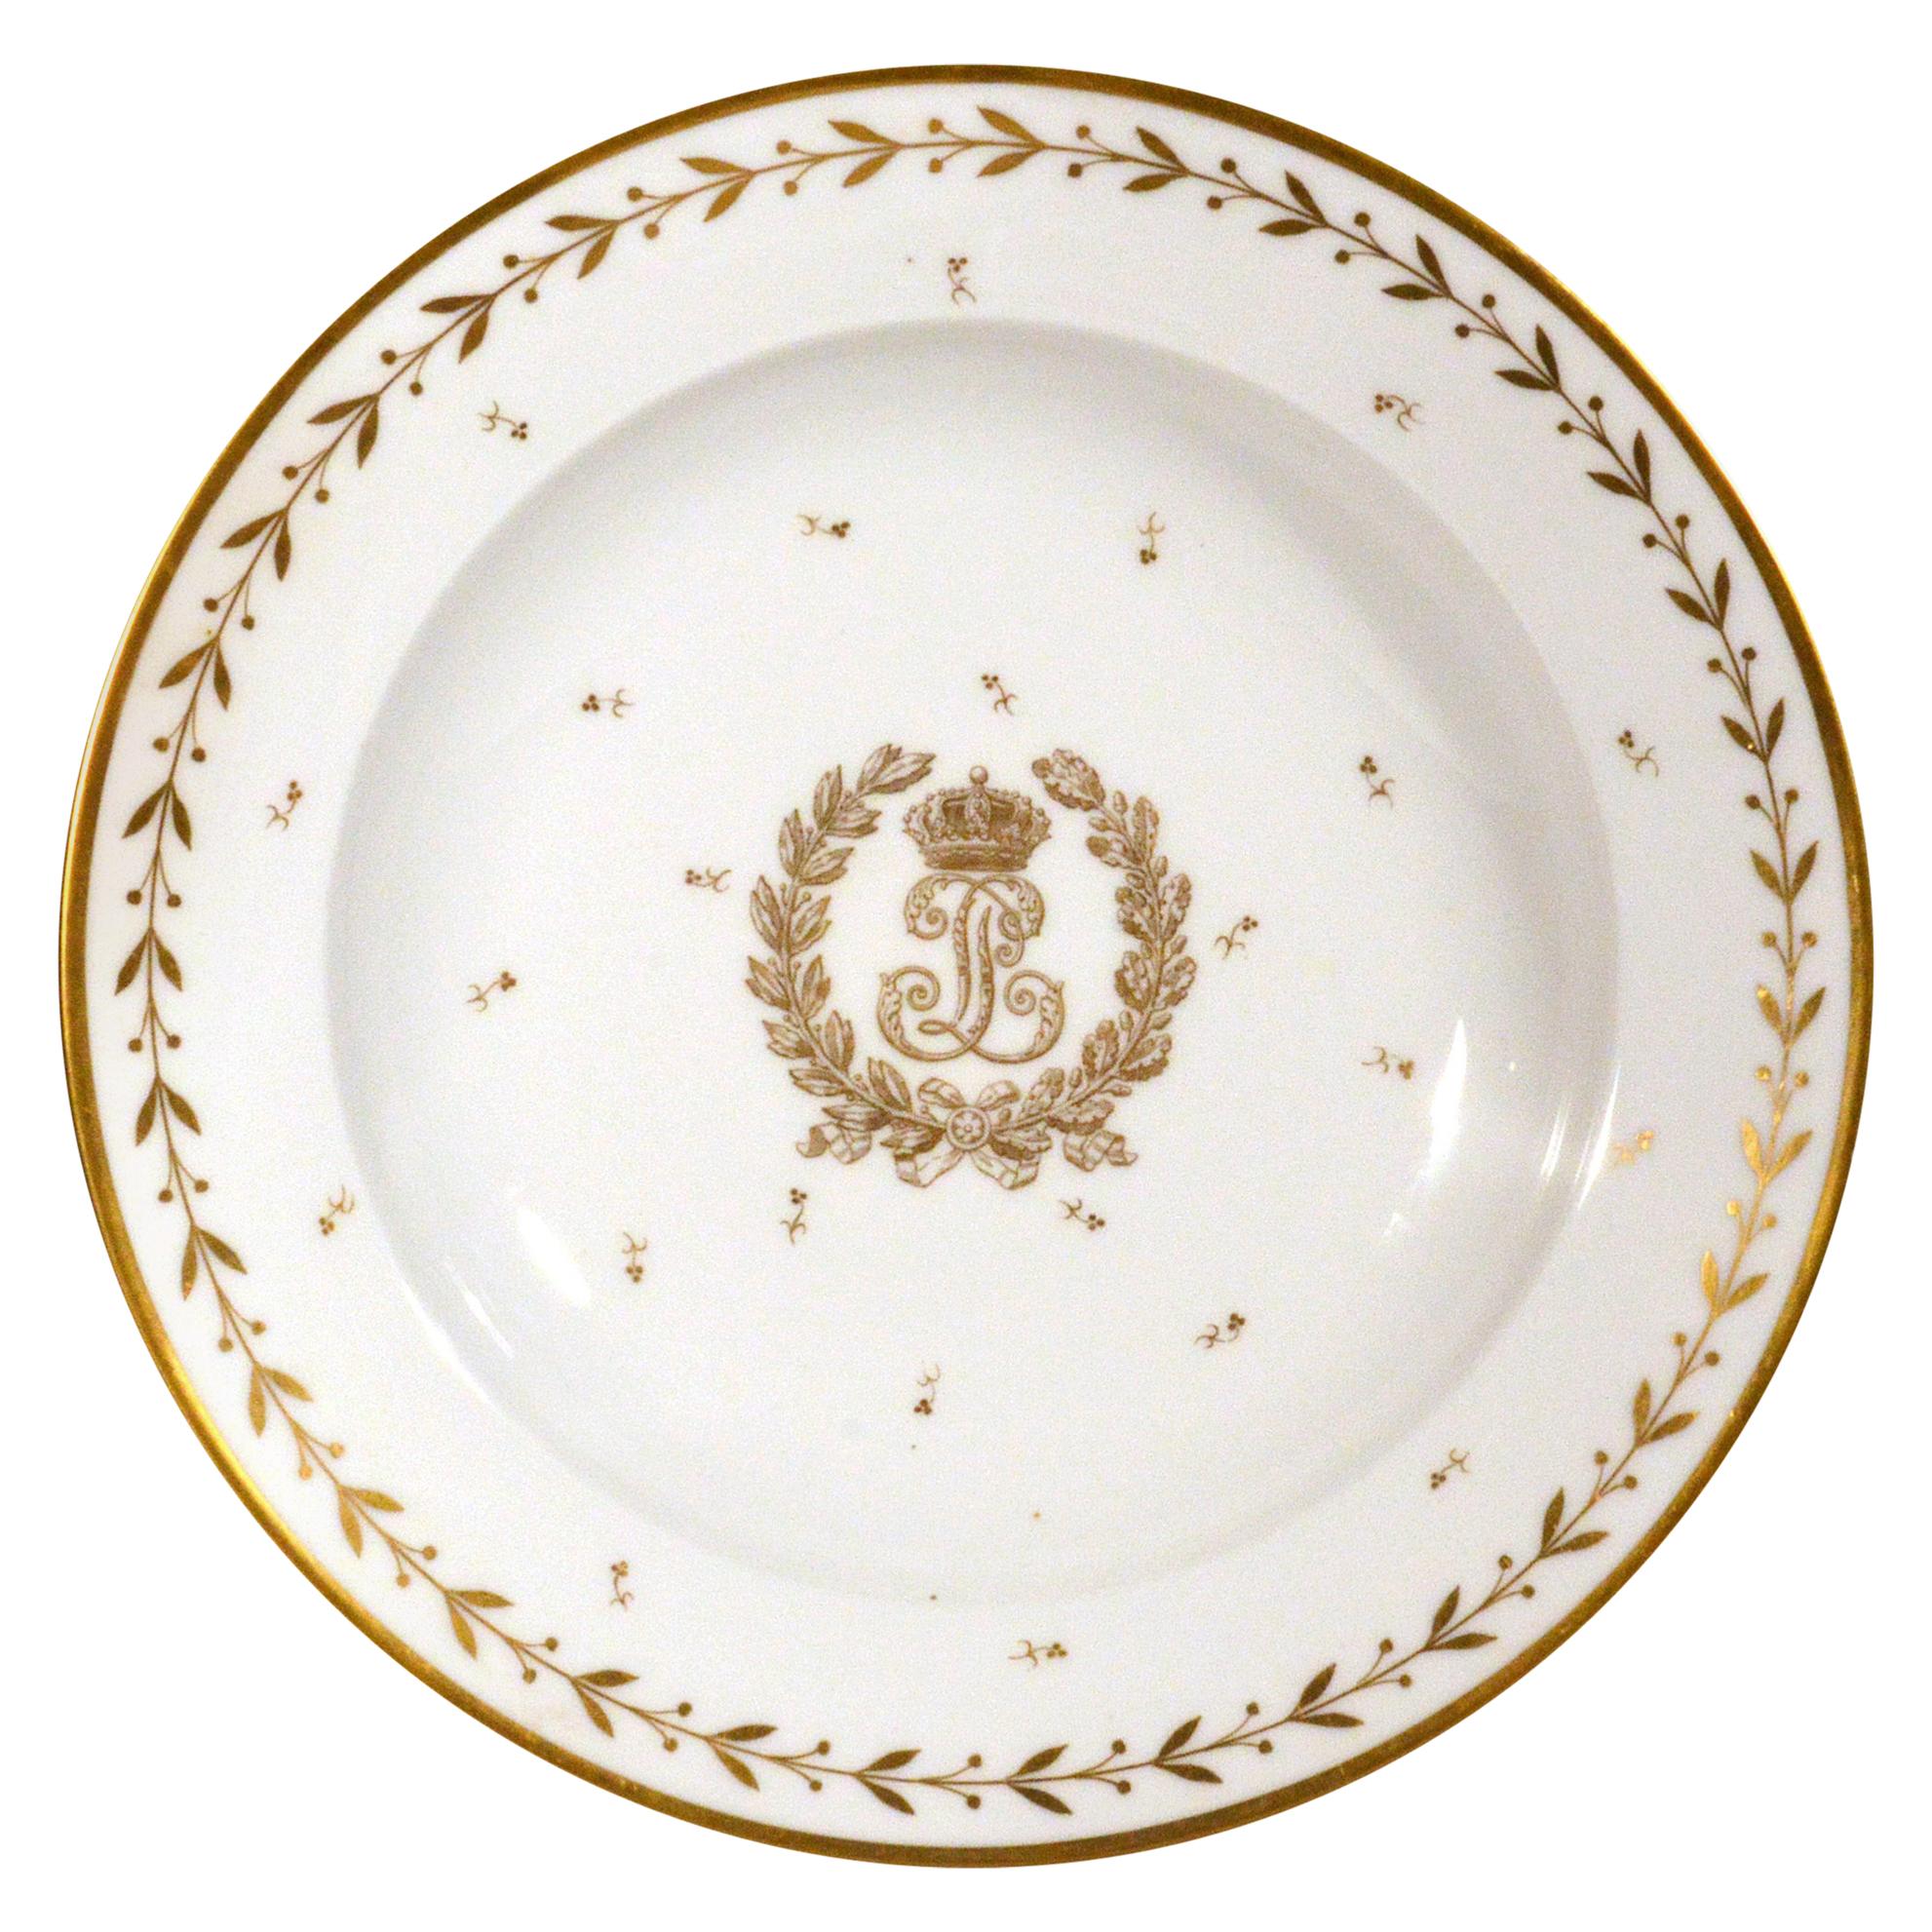 Sevres Crested Porcelain Soup Plate, Louis Philippe I, Château de Compiègne